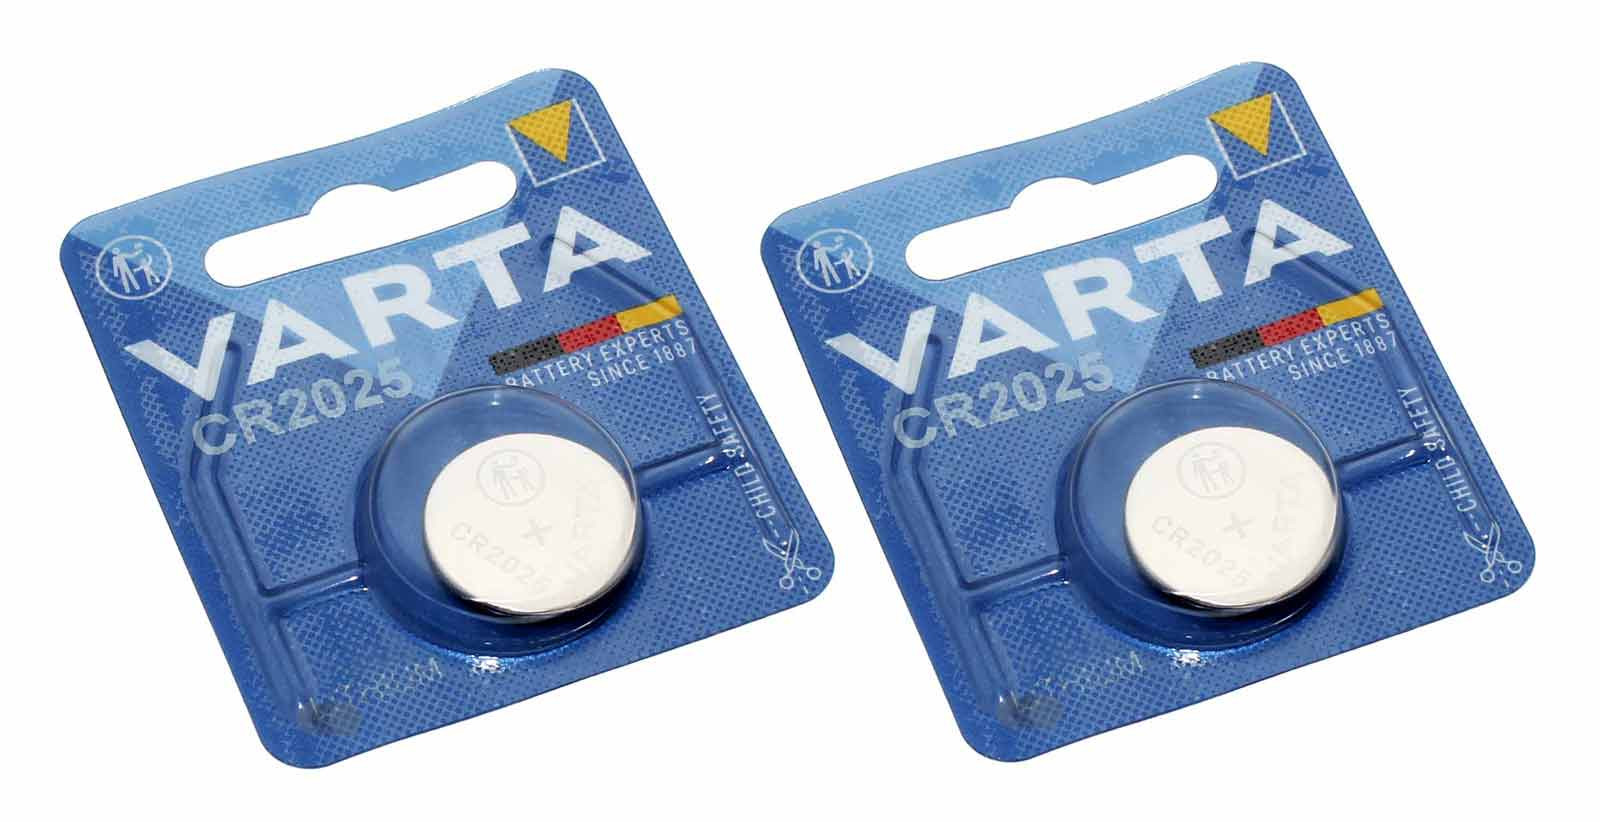 2 Stück Varta Electronics CR 2025 Lithium Knopfzelle, Batterie für Mercedes 211 Autoschlüssel Funksender mit 3 Volt und 157mAh Kapazität